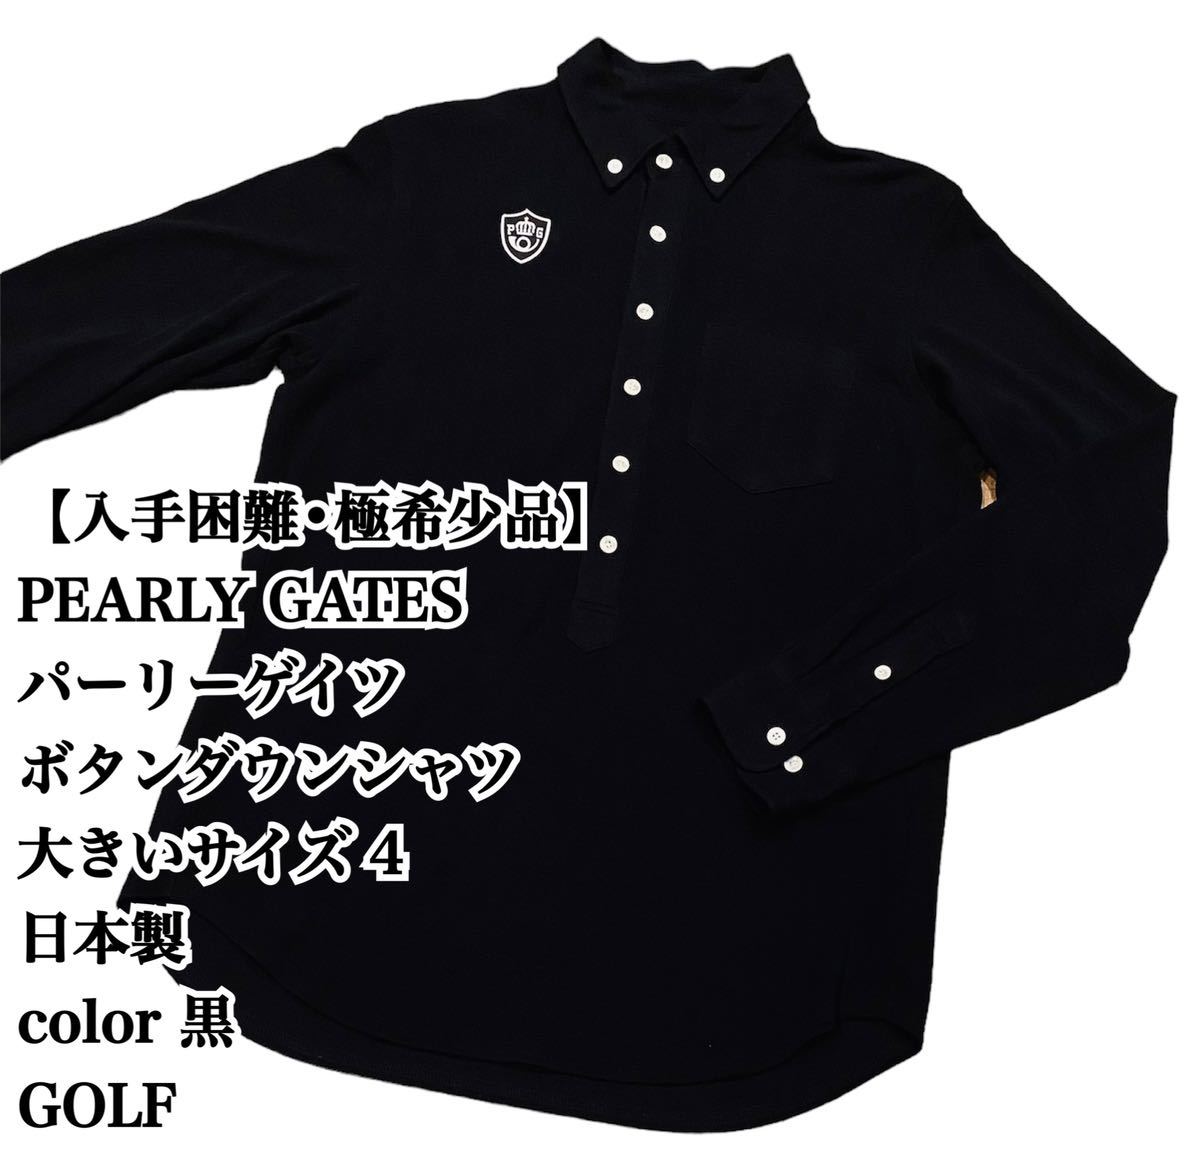 【入手困難】PEARLY GATES BDシャツ 4 GOLF 大人気 黒 完売 パーリーゲイツ ゴルフ 長袖シャツ シャツ ポロシャツ ボタンダウン 大きい